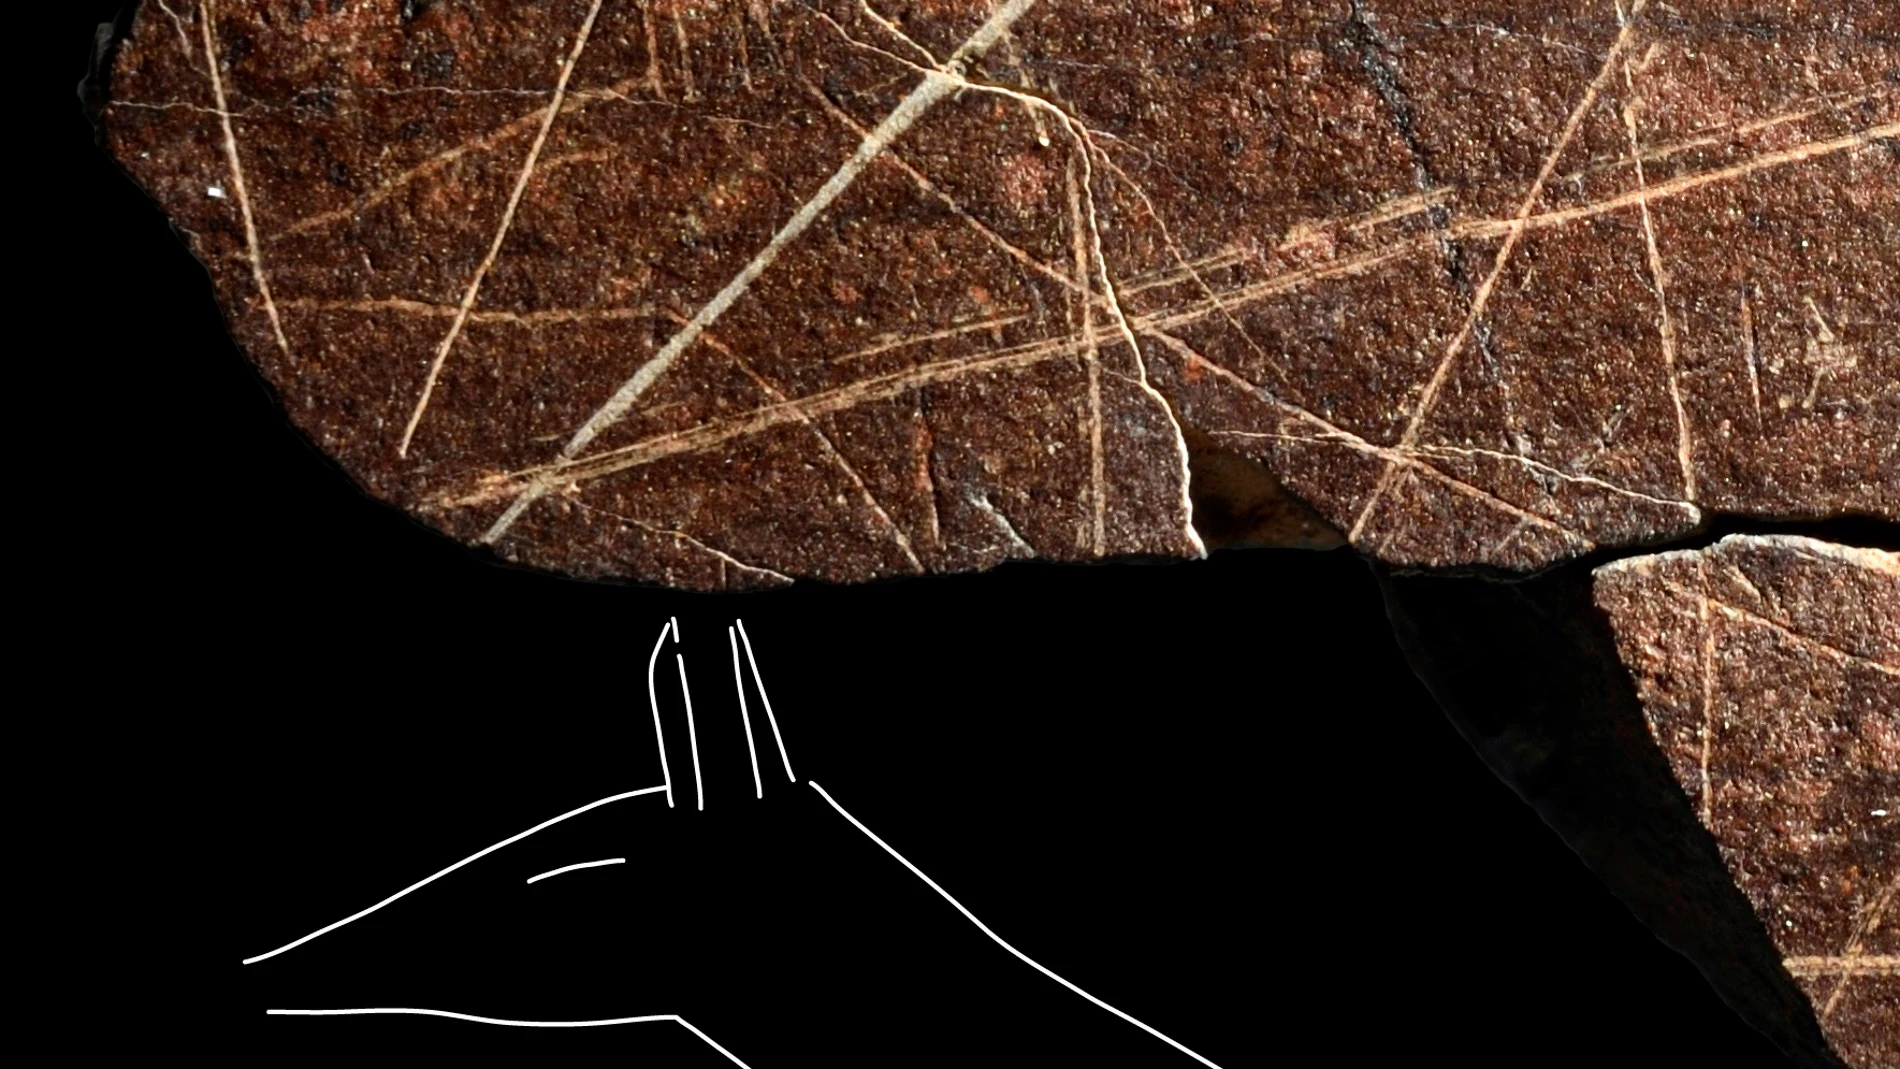 Una cierva dibujada en roca de pizarra con trazos únicos cerrados y mediante piedras muy cortantes